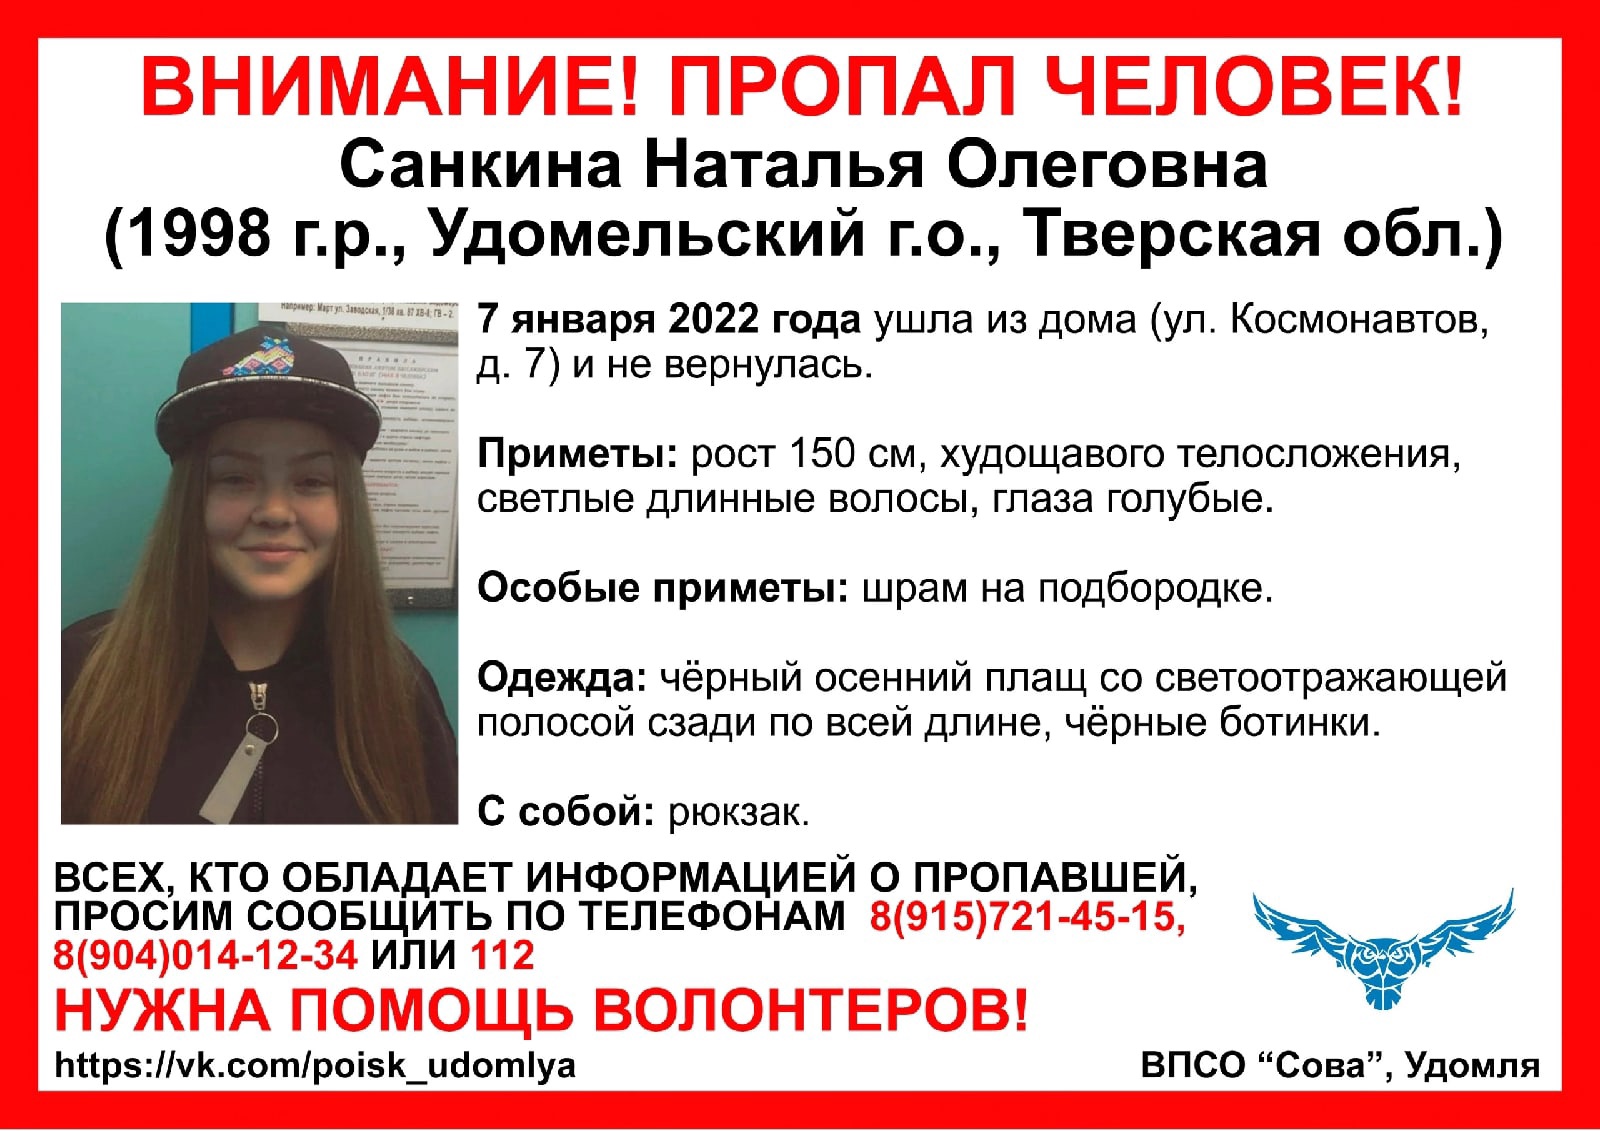 Две недели в Тверской области не могут найти пропавшую девушку